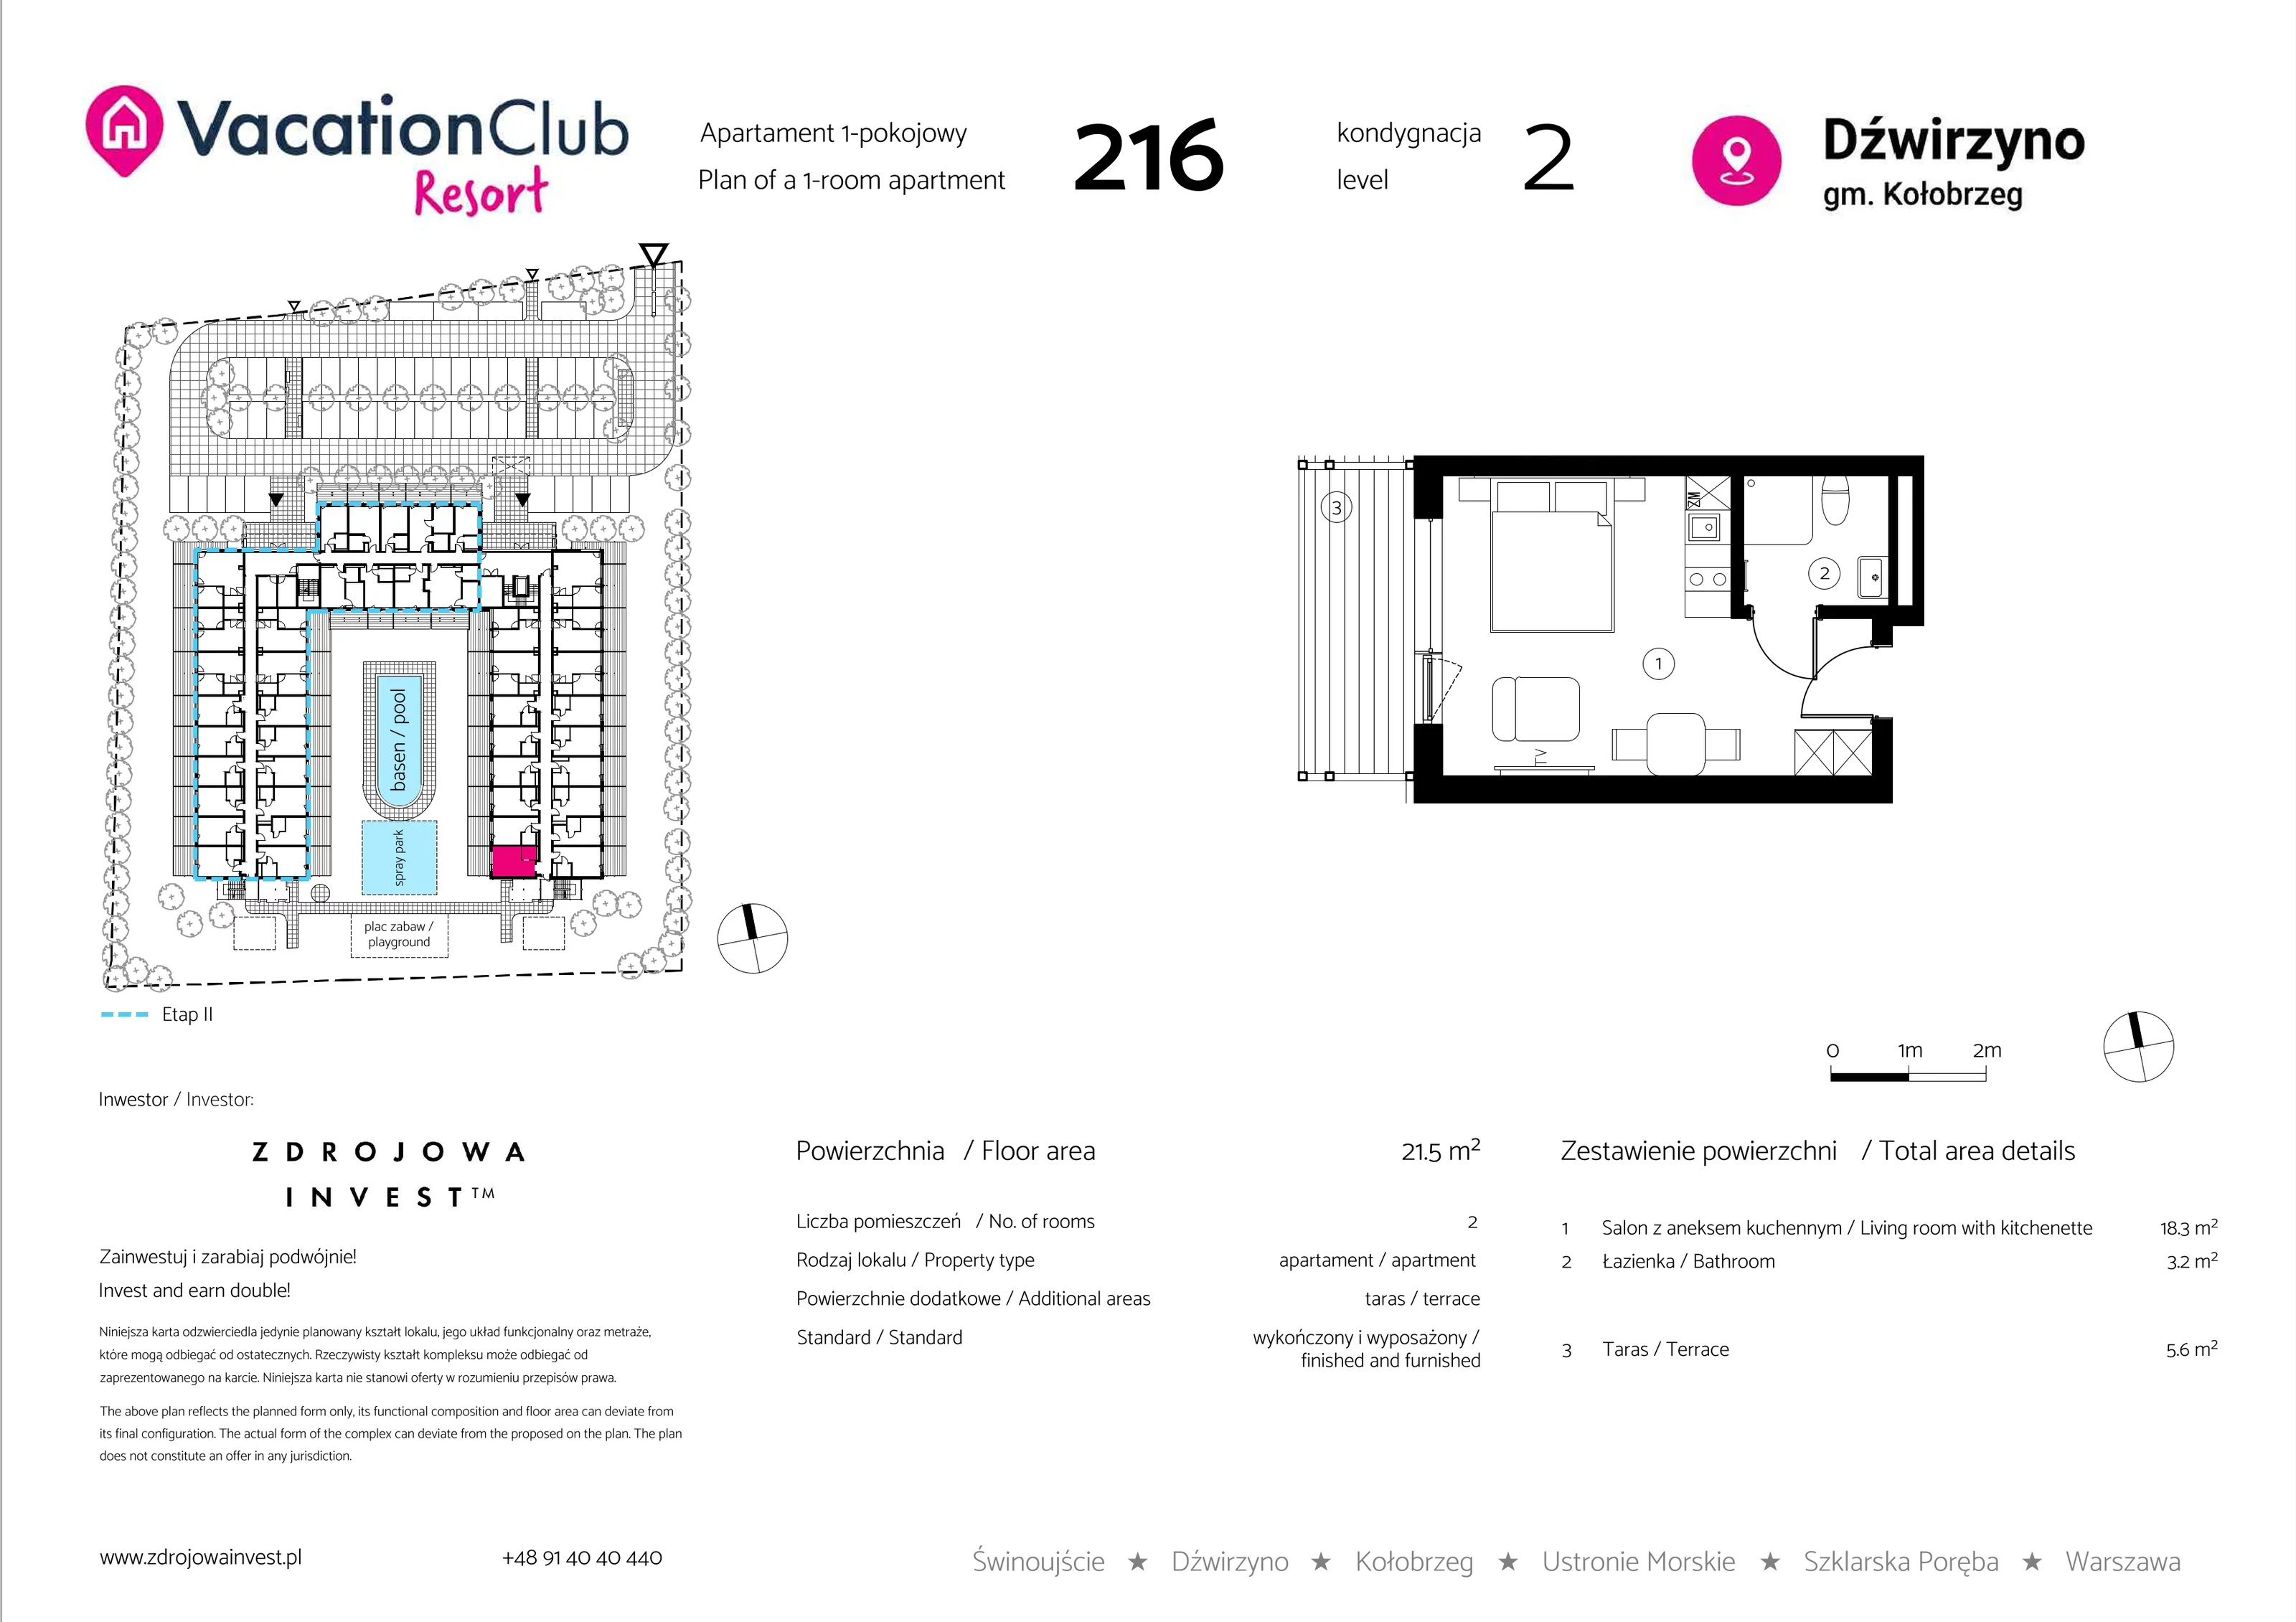 Apartament 21,50 m², piętro 1, oferta nr 216, Vacation Club Resort - apartamenty wakacyjne, Dźwirzyno, ul. Wczasowa 8